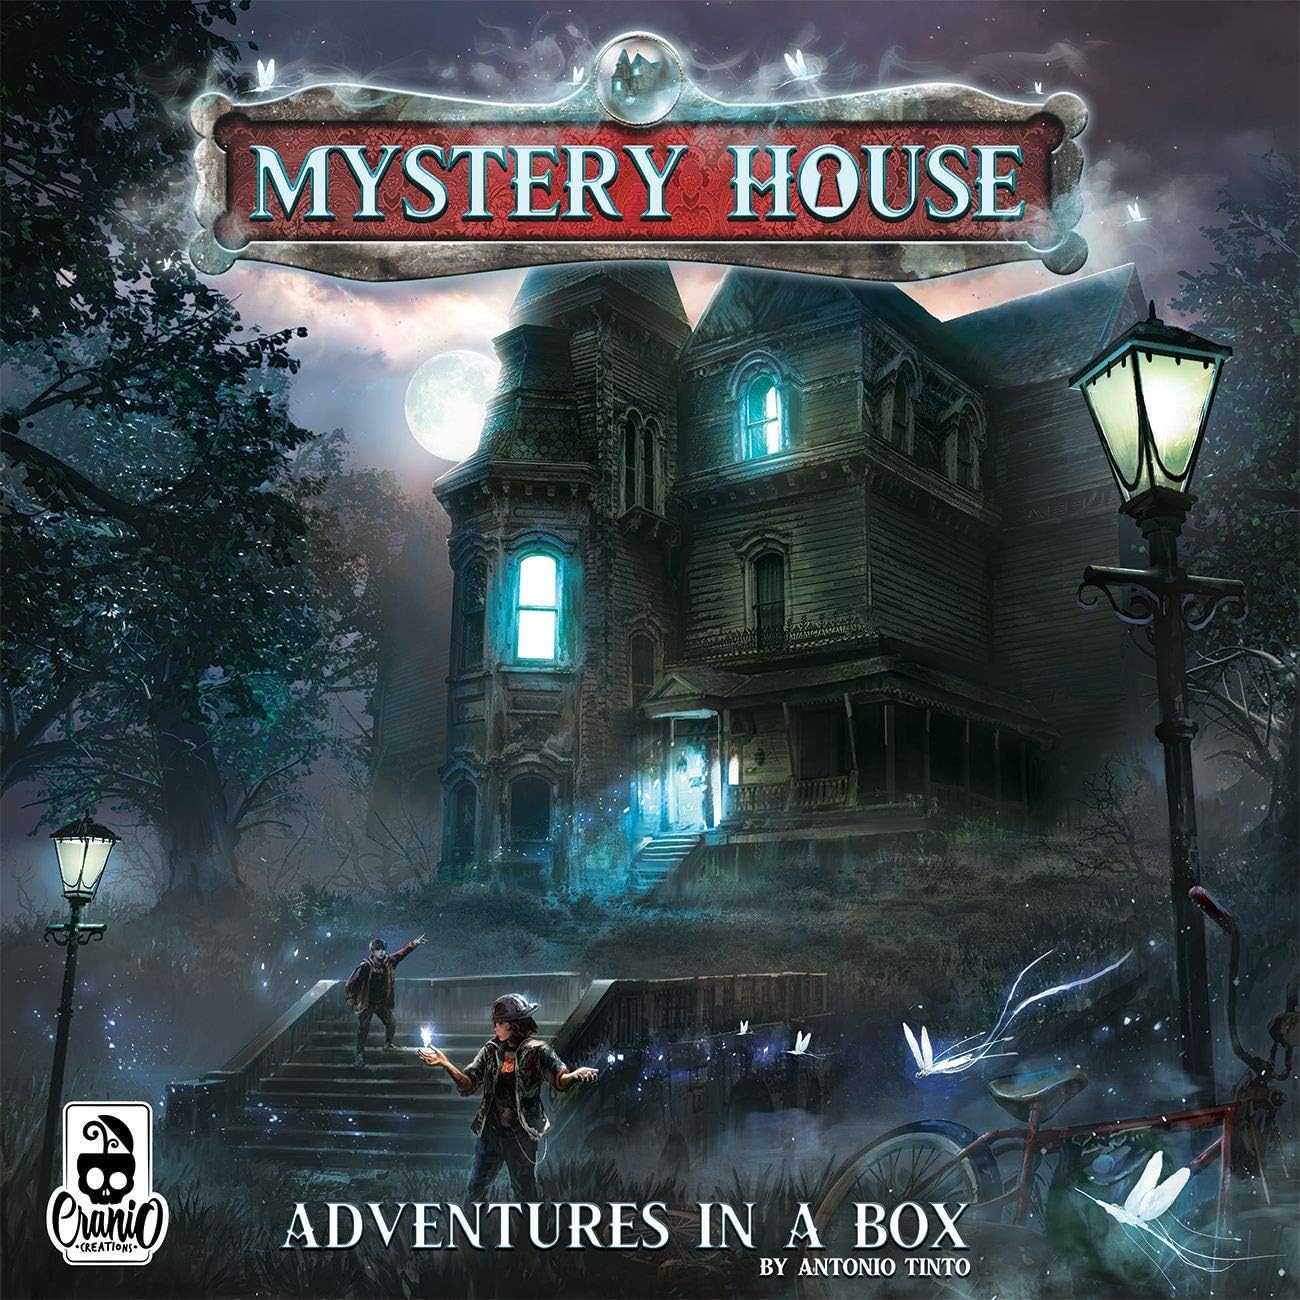 Mystery house - 